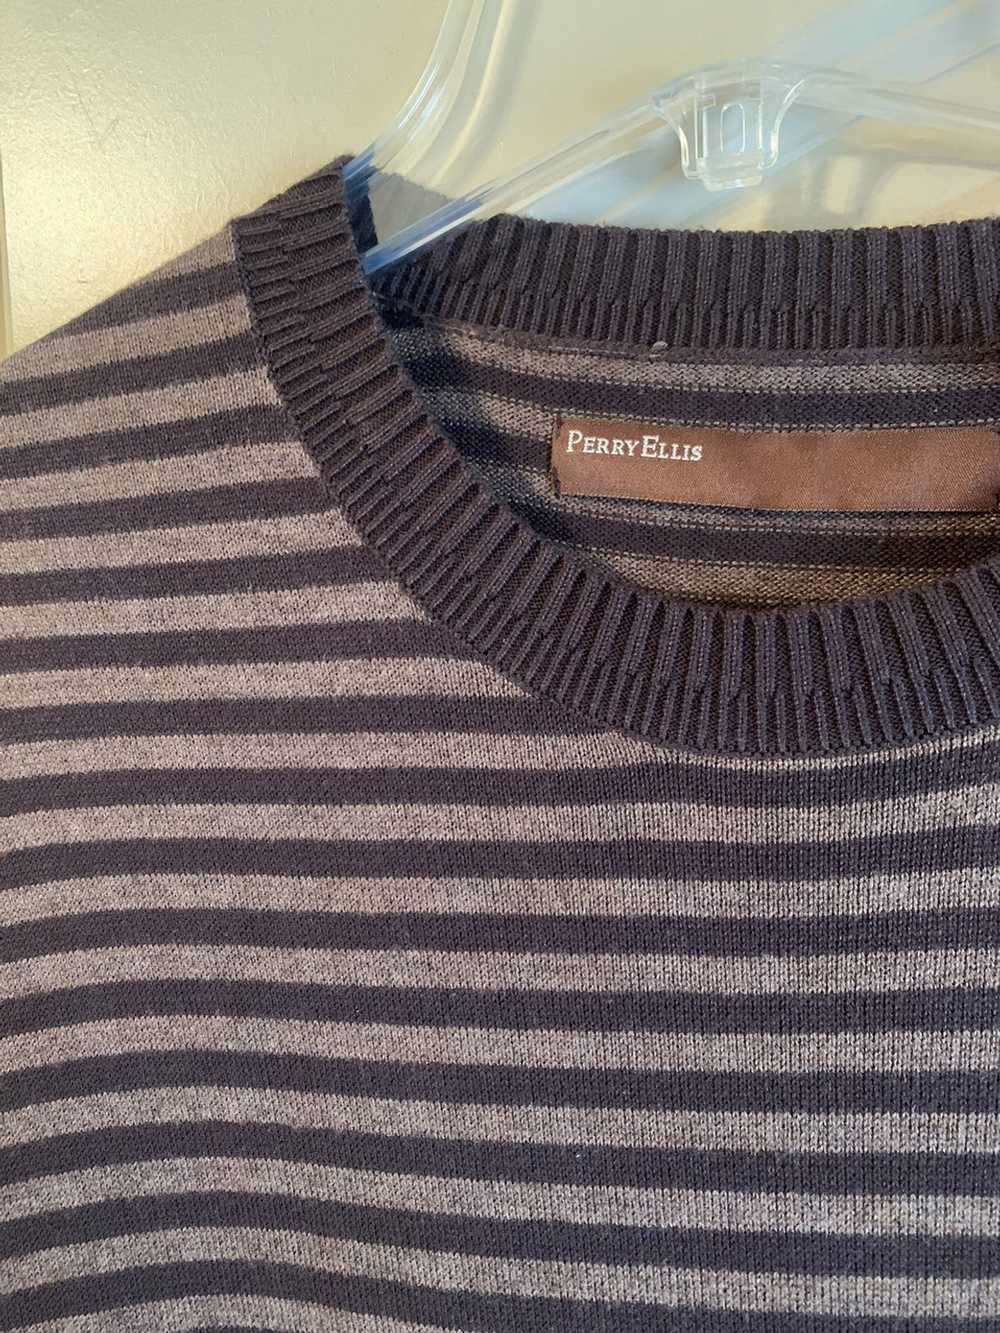 Perry Ellis × Vintage Perry Ellis Vintage Sweater - image 2